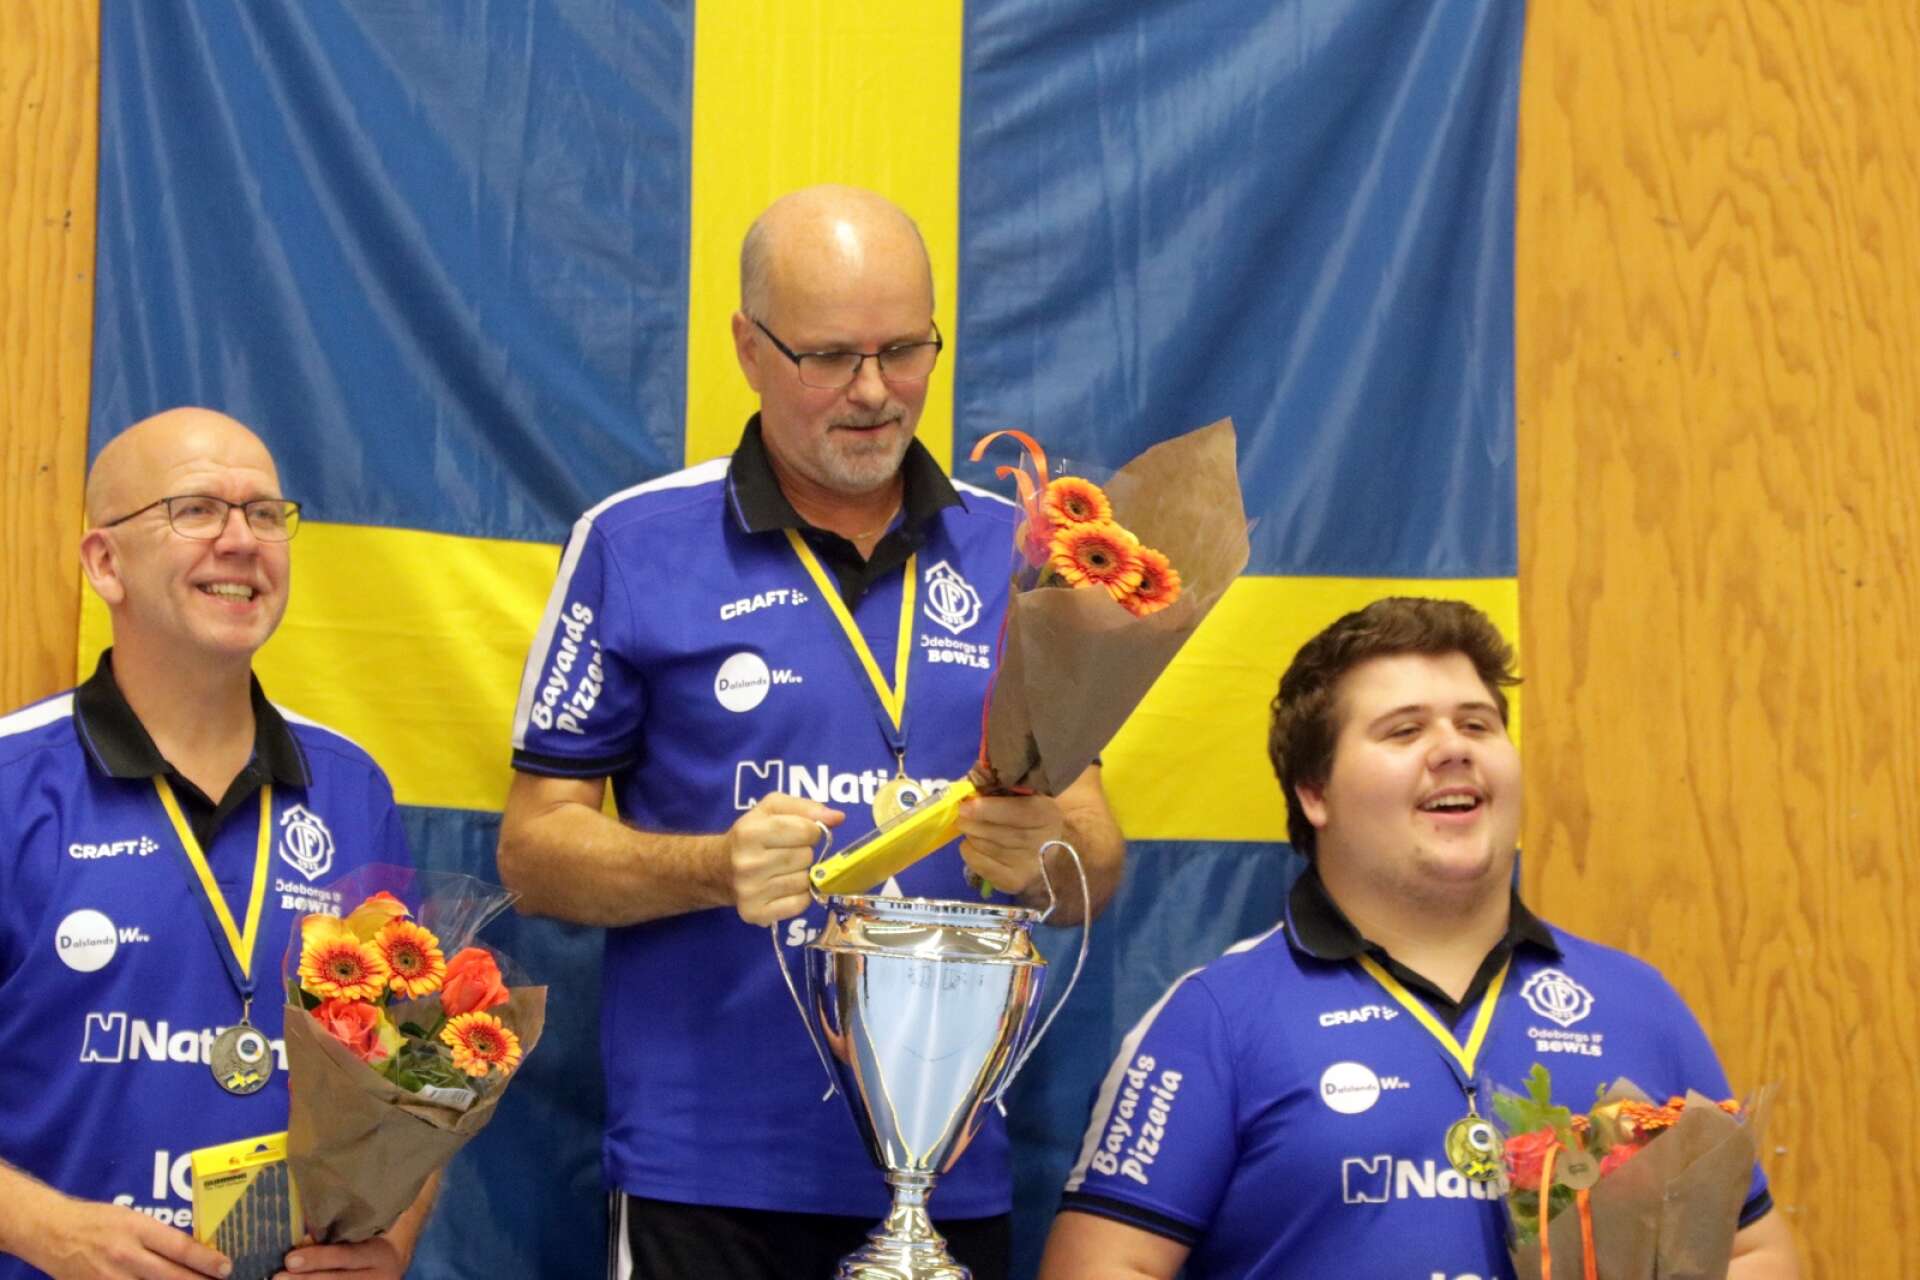 Det var trippelt Ödeborgs IF på pallen i singel-SM. Från vänster Joel Häger, Jörgen Sundberg och Jonas Häger.